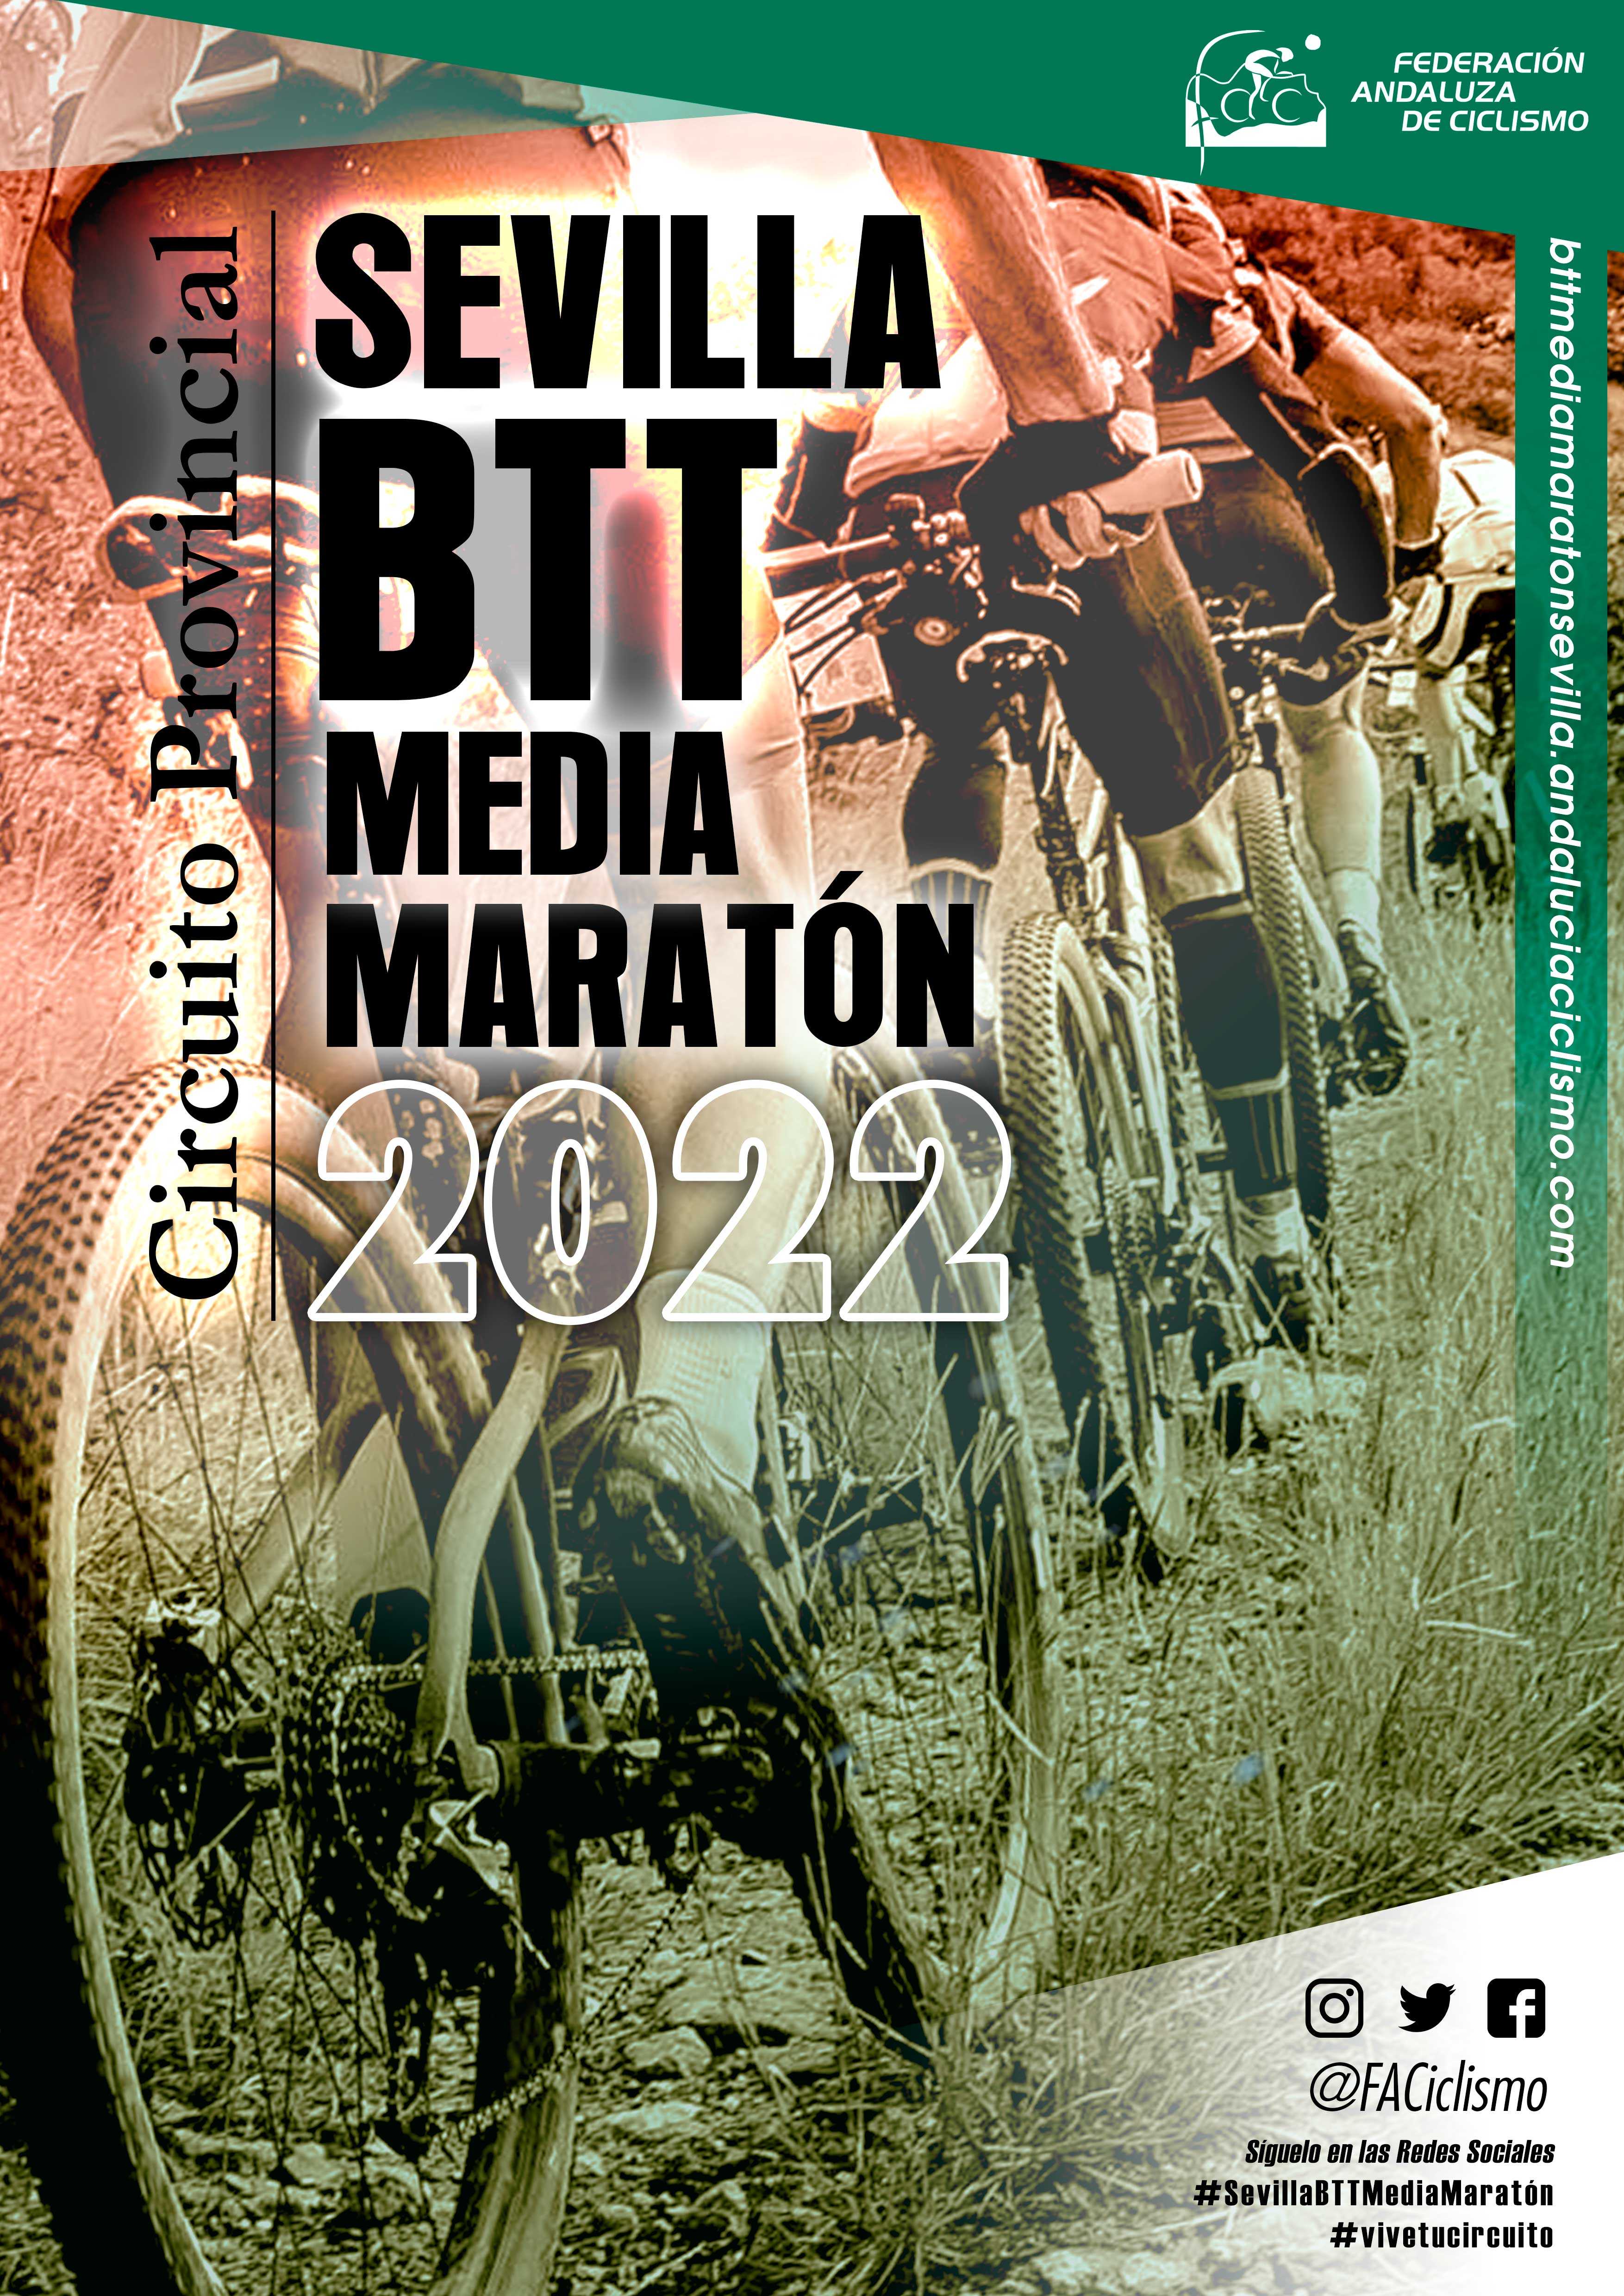 El Circuito Sevilla BTT Media Maratón apunta hacia Marinaleda